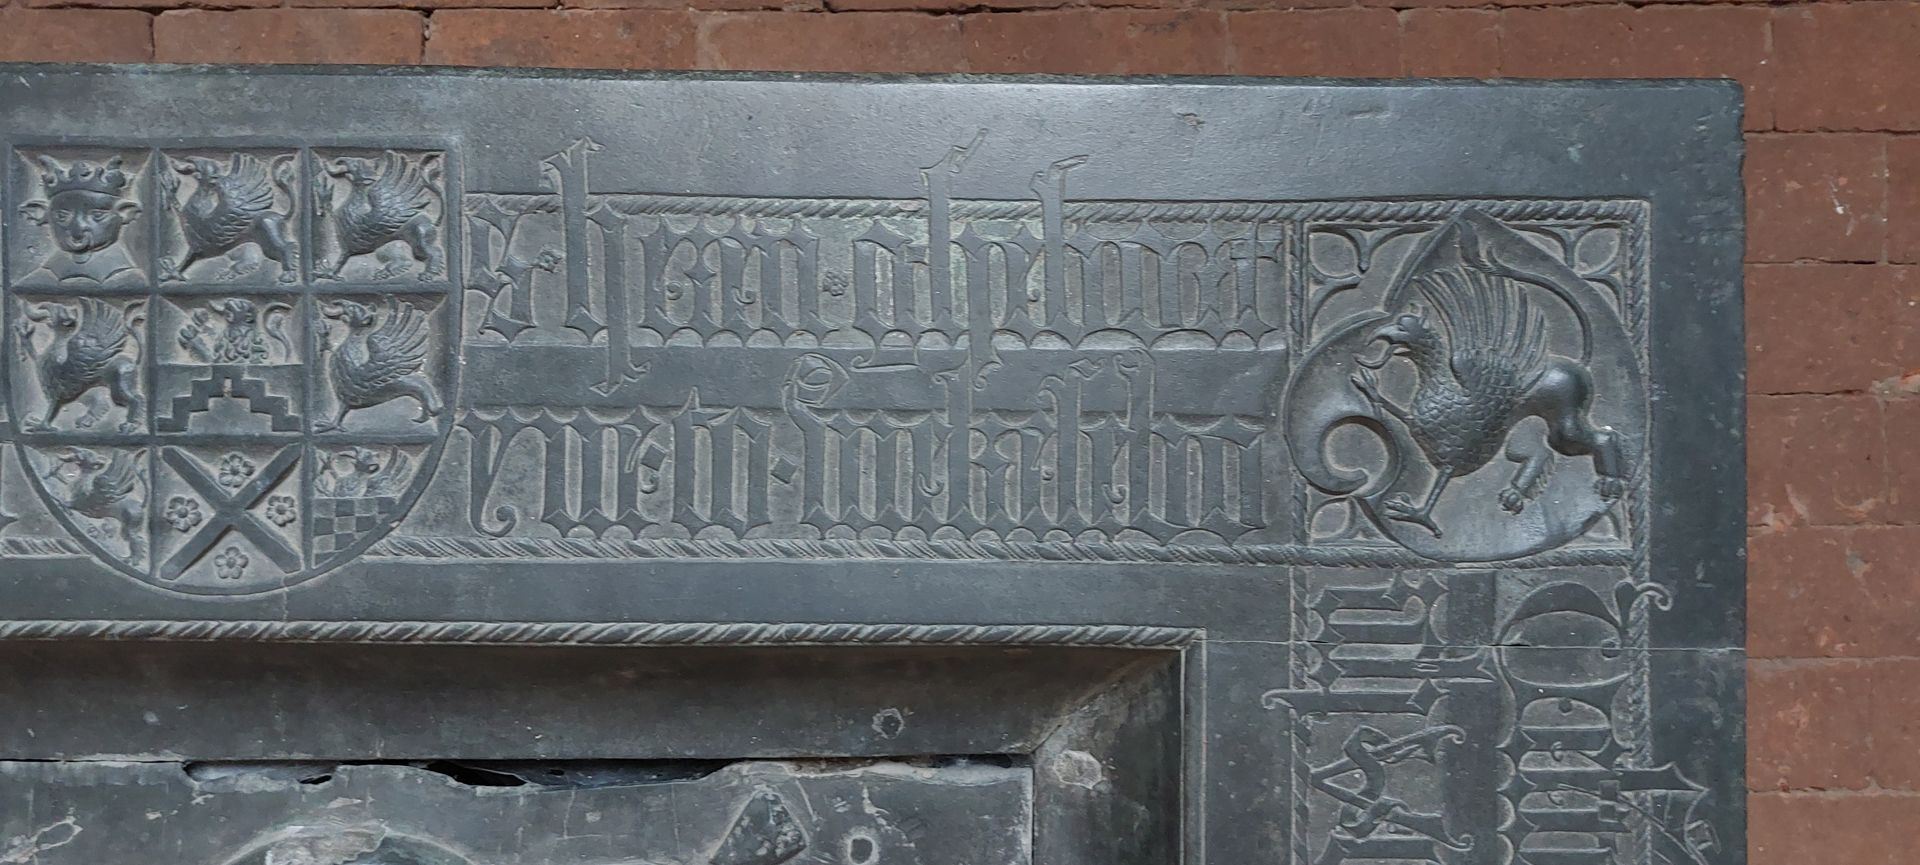 Grabplatte der Herzogin Sophia von Mecklenburg, Prinzessin von Pommern obere rechte Ecke mit dem mecklenburgischen Herzogswappen und dem Greif des Wappens von Kassuben